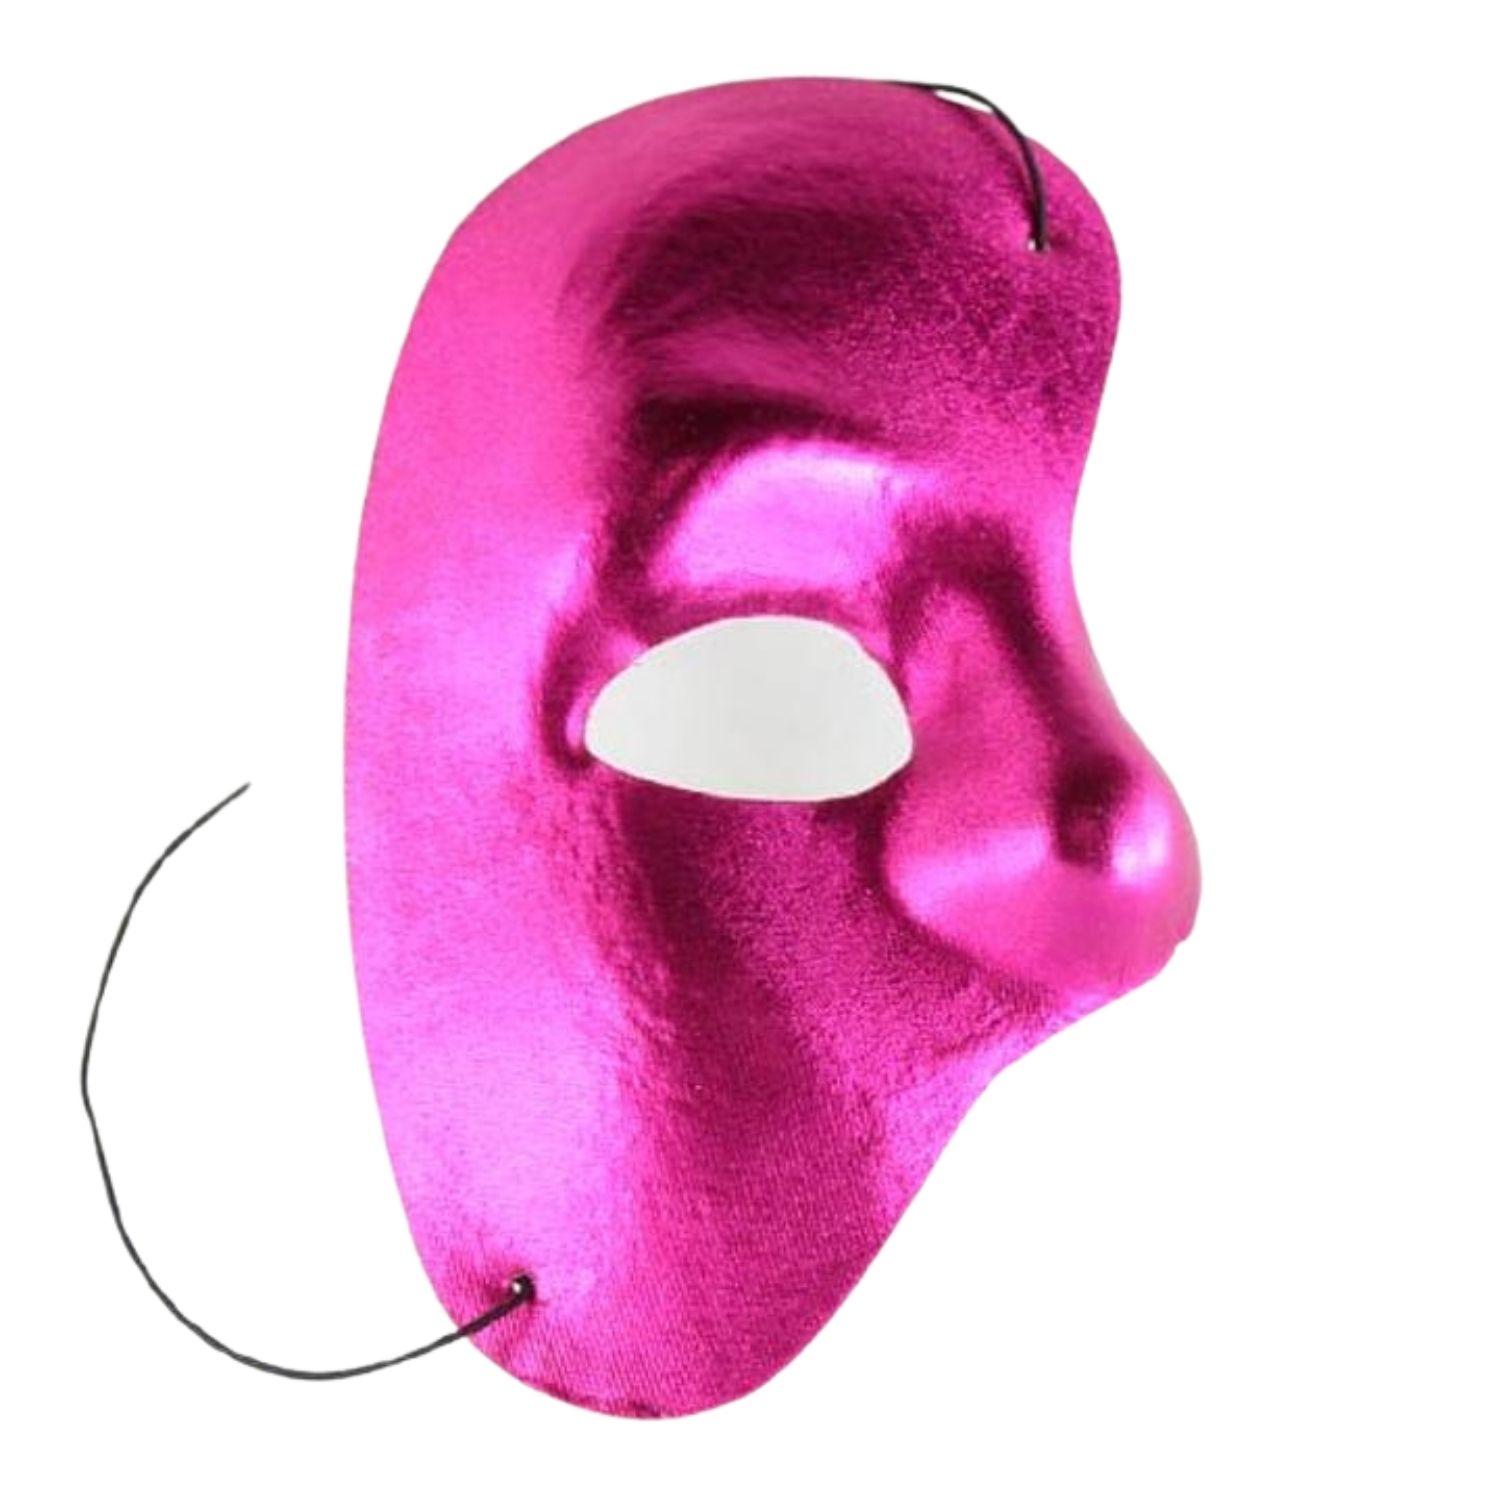 evigt Overlegenhed værksted Shiny Mask, Half Face Mask, Satin Mask, Phantom Of The Opera Mask